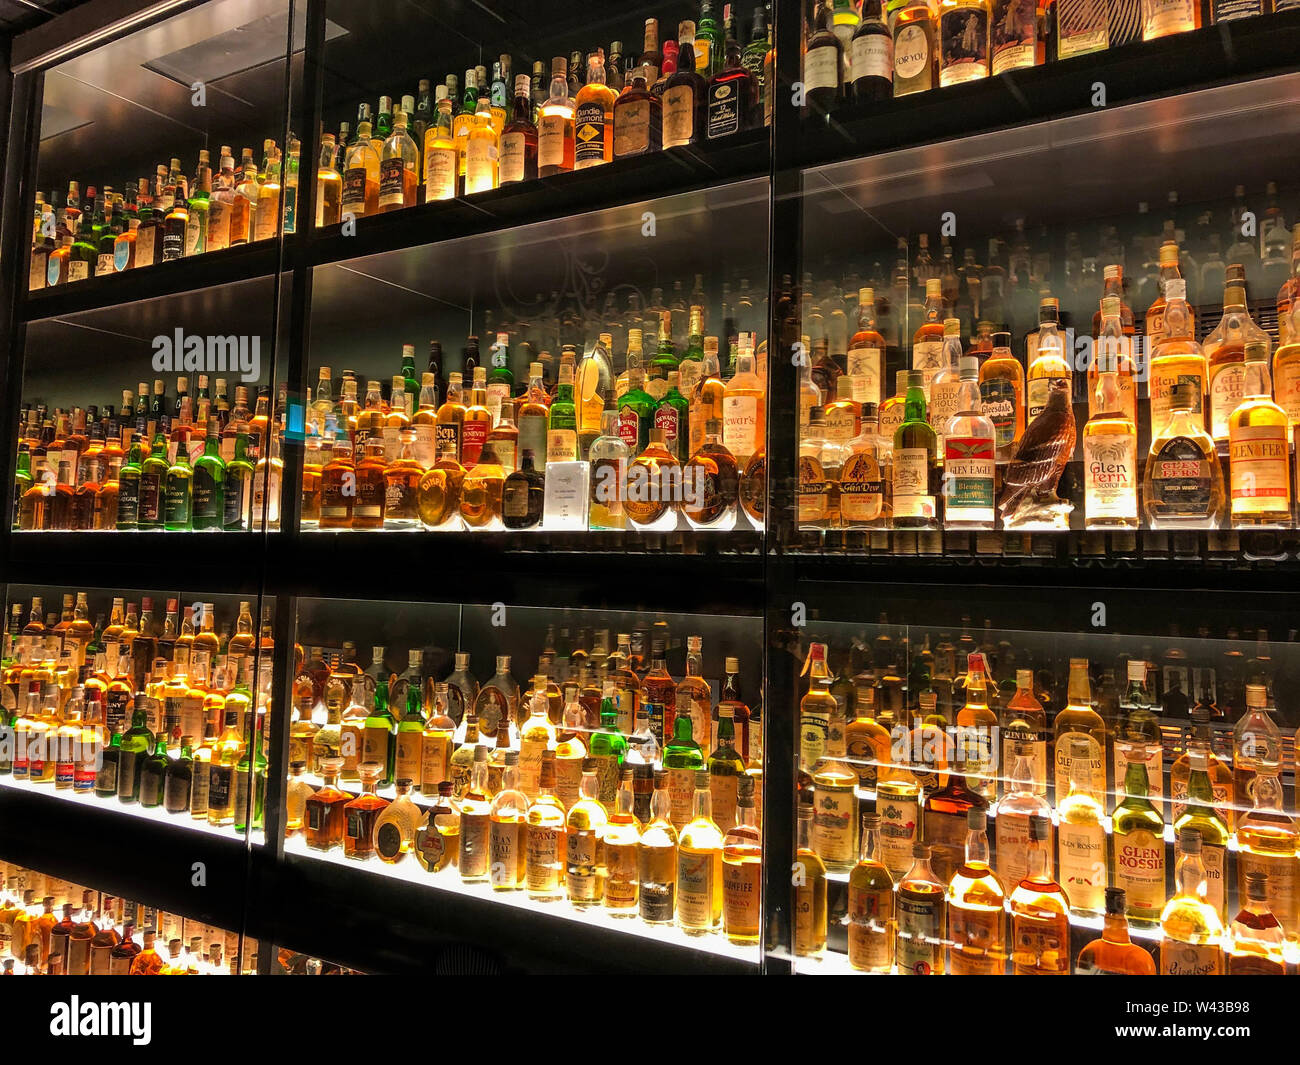 Edimburgo, Scozia - 12 Maggio 2019: La Diageo Claive Vidiz raccolta di 3.384 bottiglie di whisky, visualizzato presso lo Scotch Whisky Experience. Foto Stock